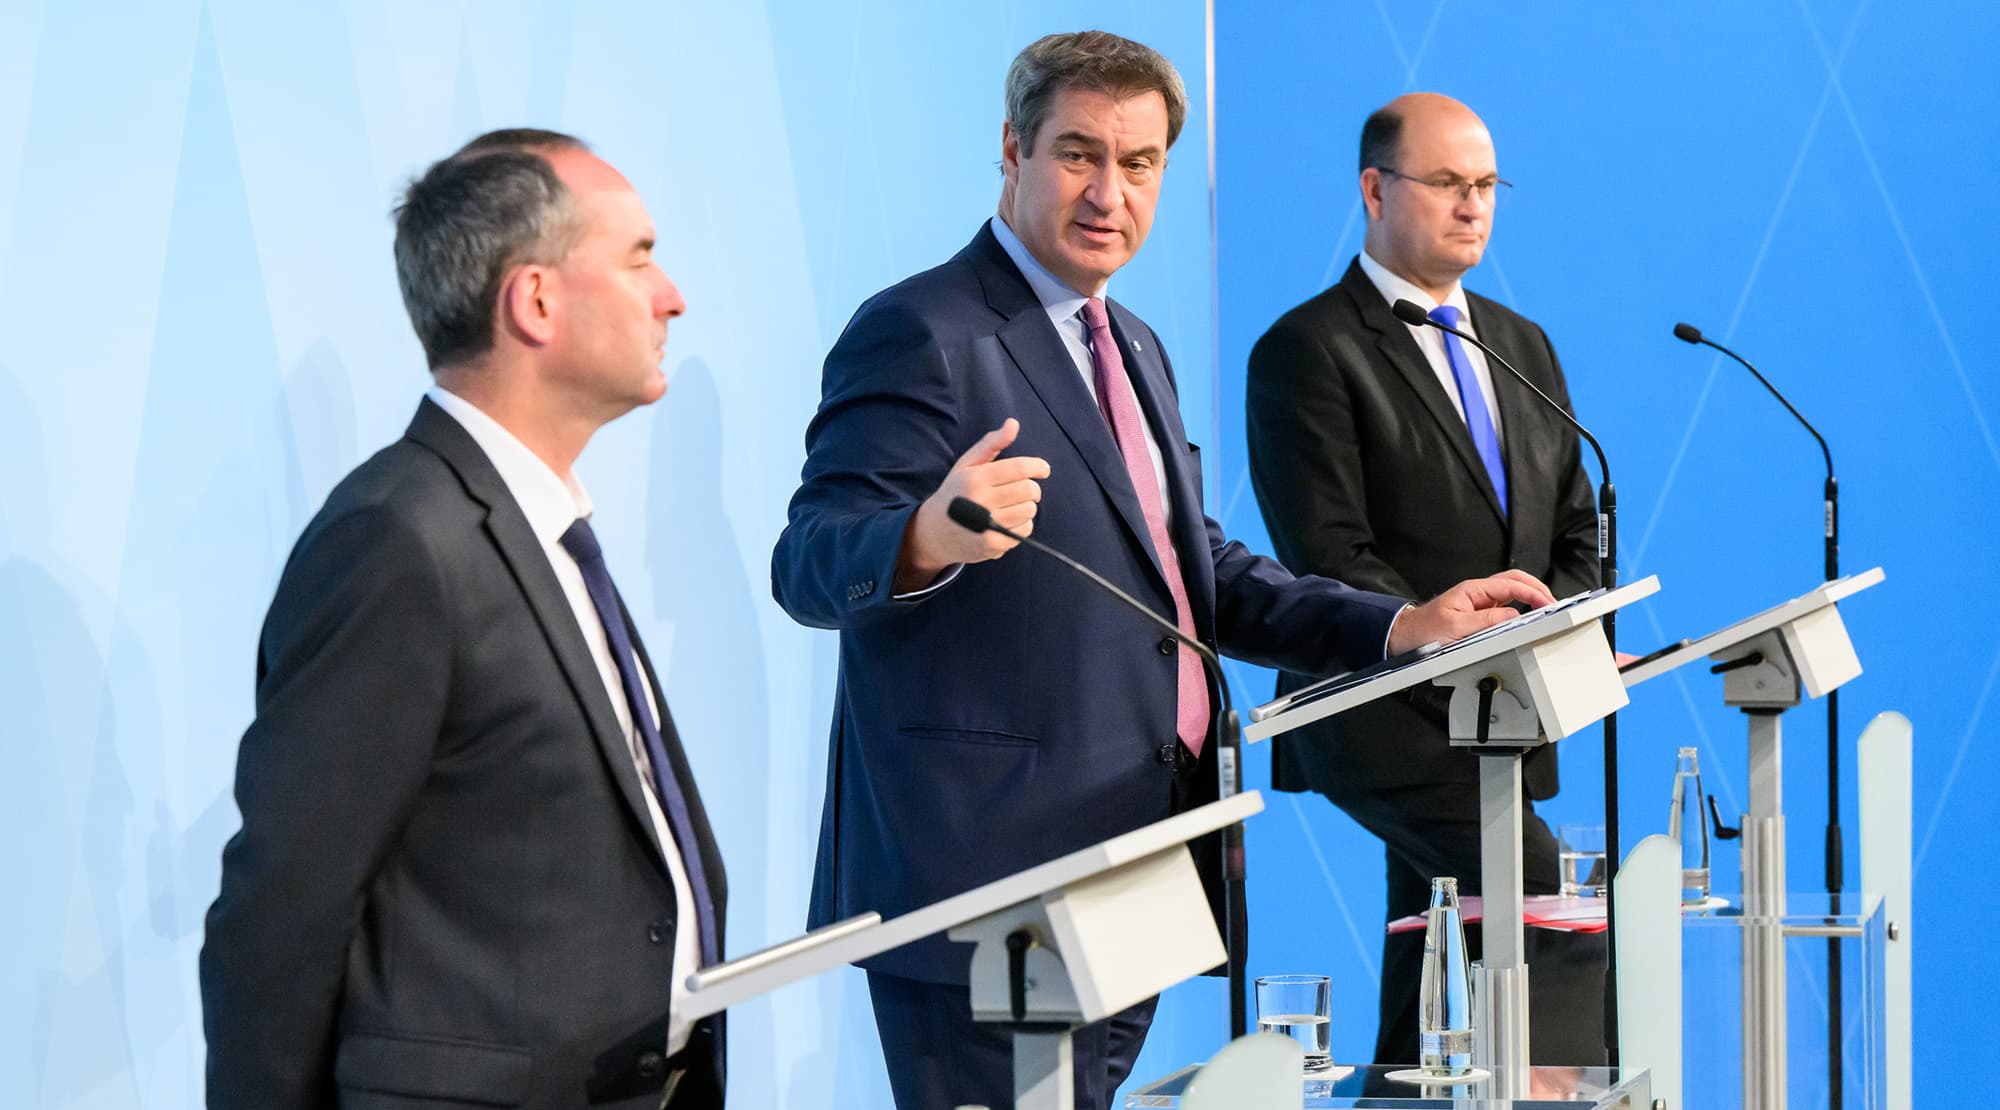 Pressekonferenz mit Wirtschaftsminister Hubert Aiwanger, Ministerpräsident Dr. Markus Söder und Finanzminister Albert Füracker (v.l.n.r.).